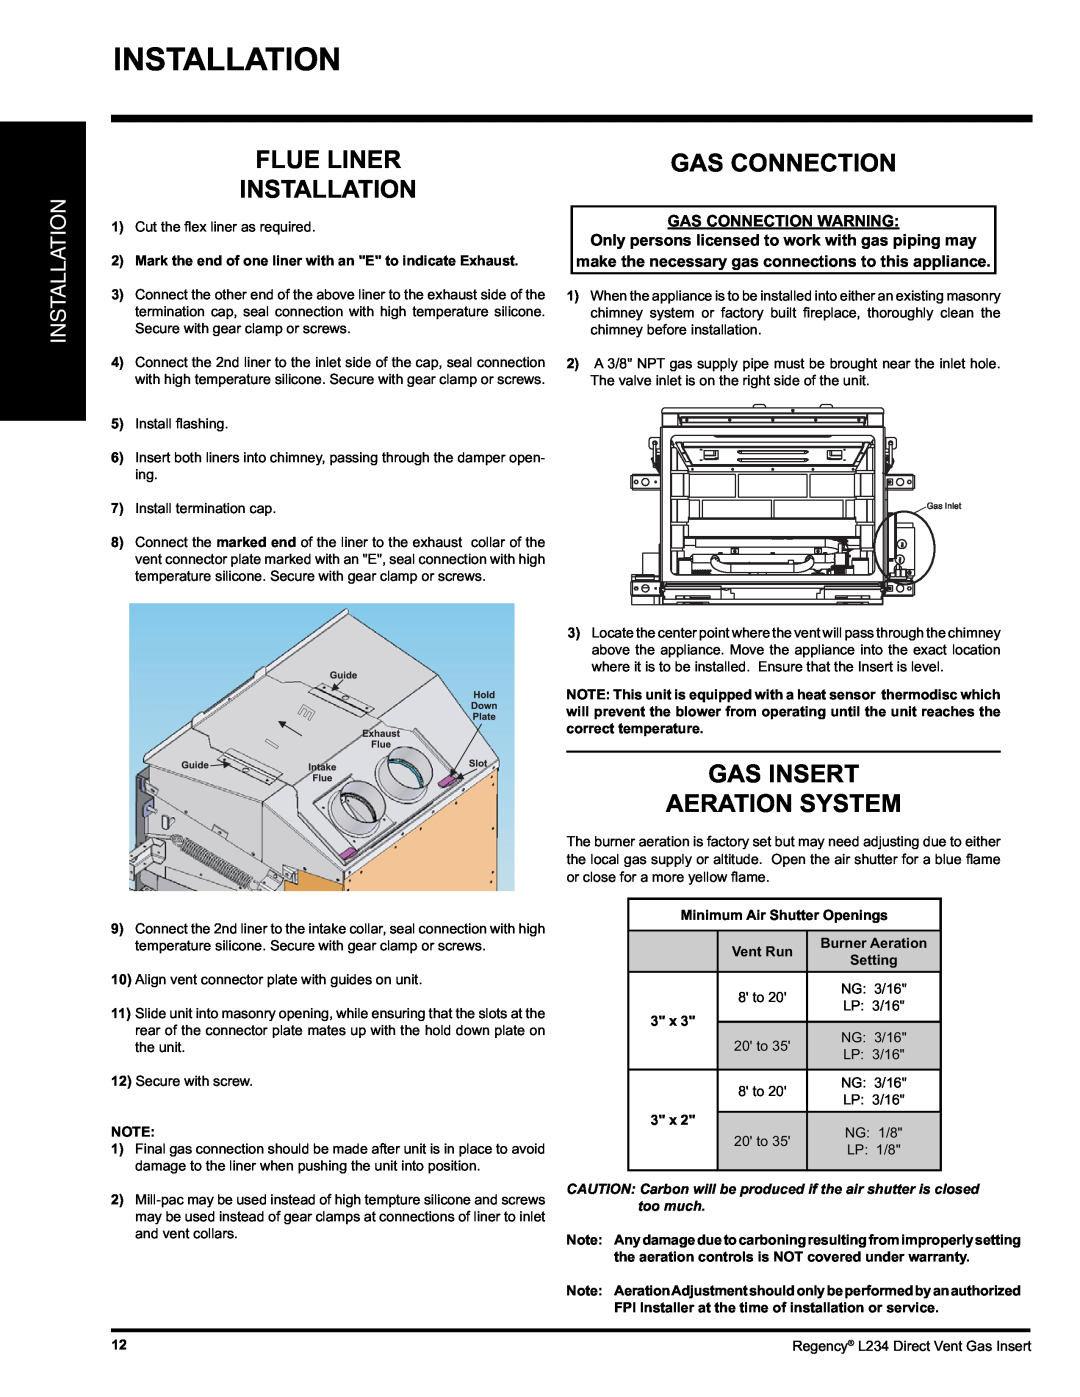 Regency L234-LP, L234-NG Installation, Gas Insert Aeration System, Flue Liner, Gas Connection Warning, Vent Run 